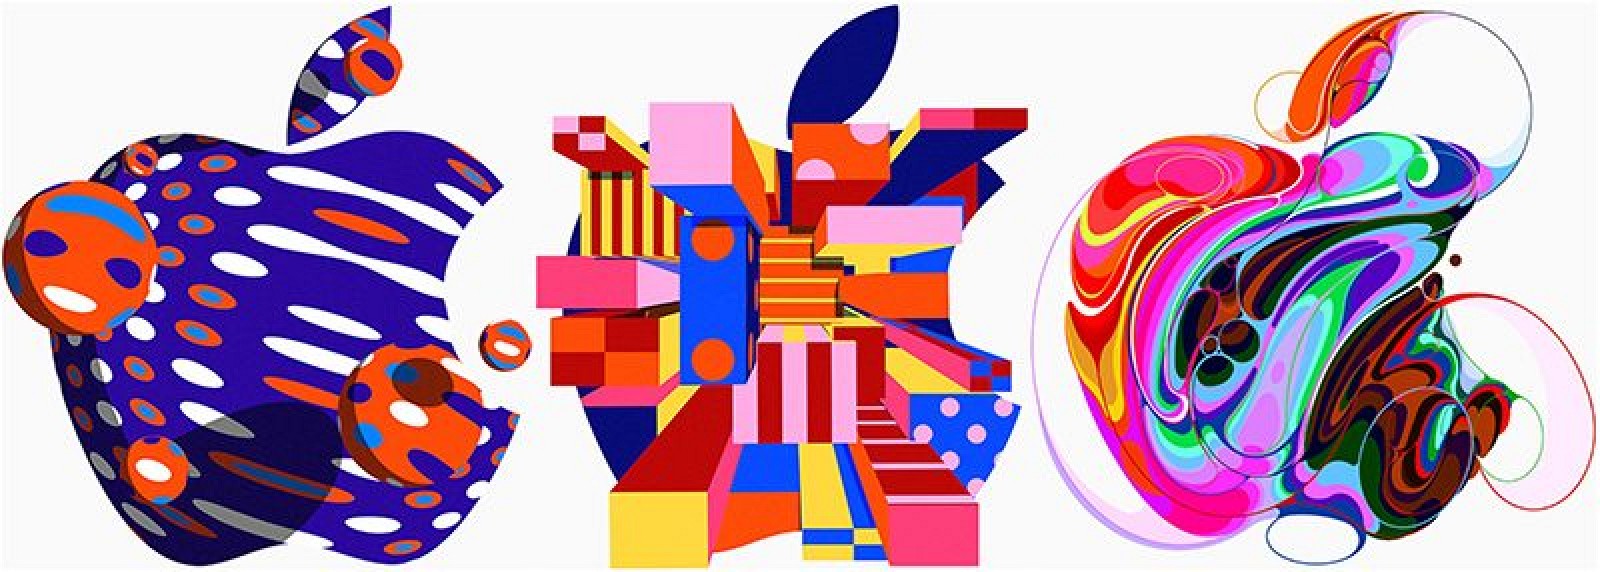 Apple lancia una pagina per l’evento Apple 30 ottobre con decine di loghi diversi